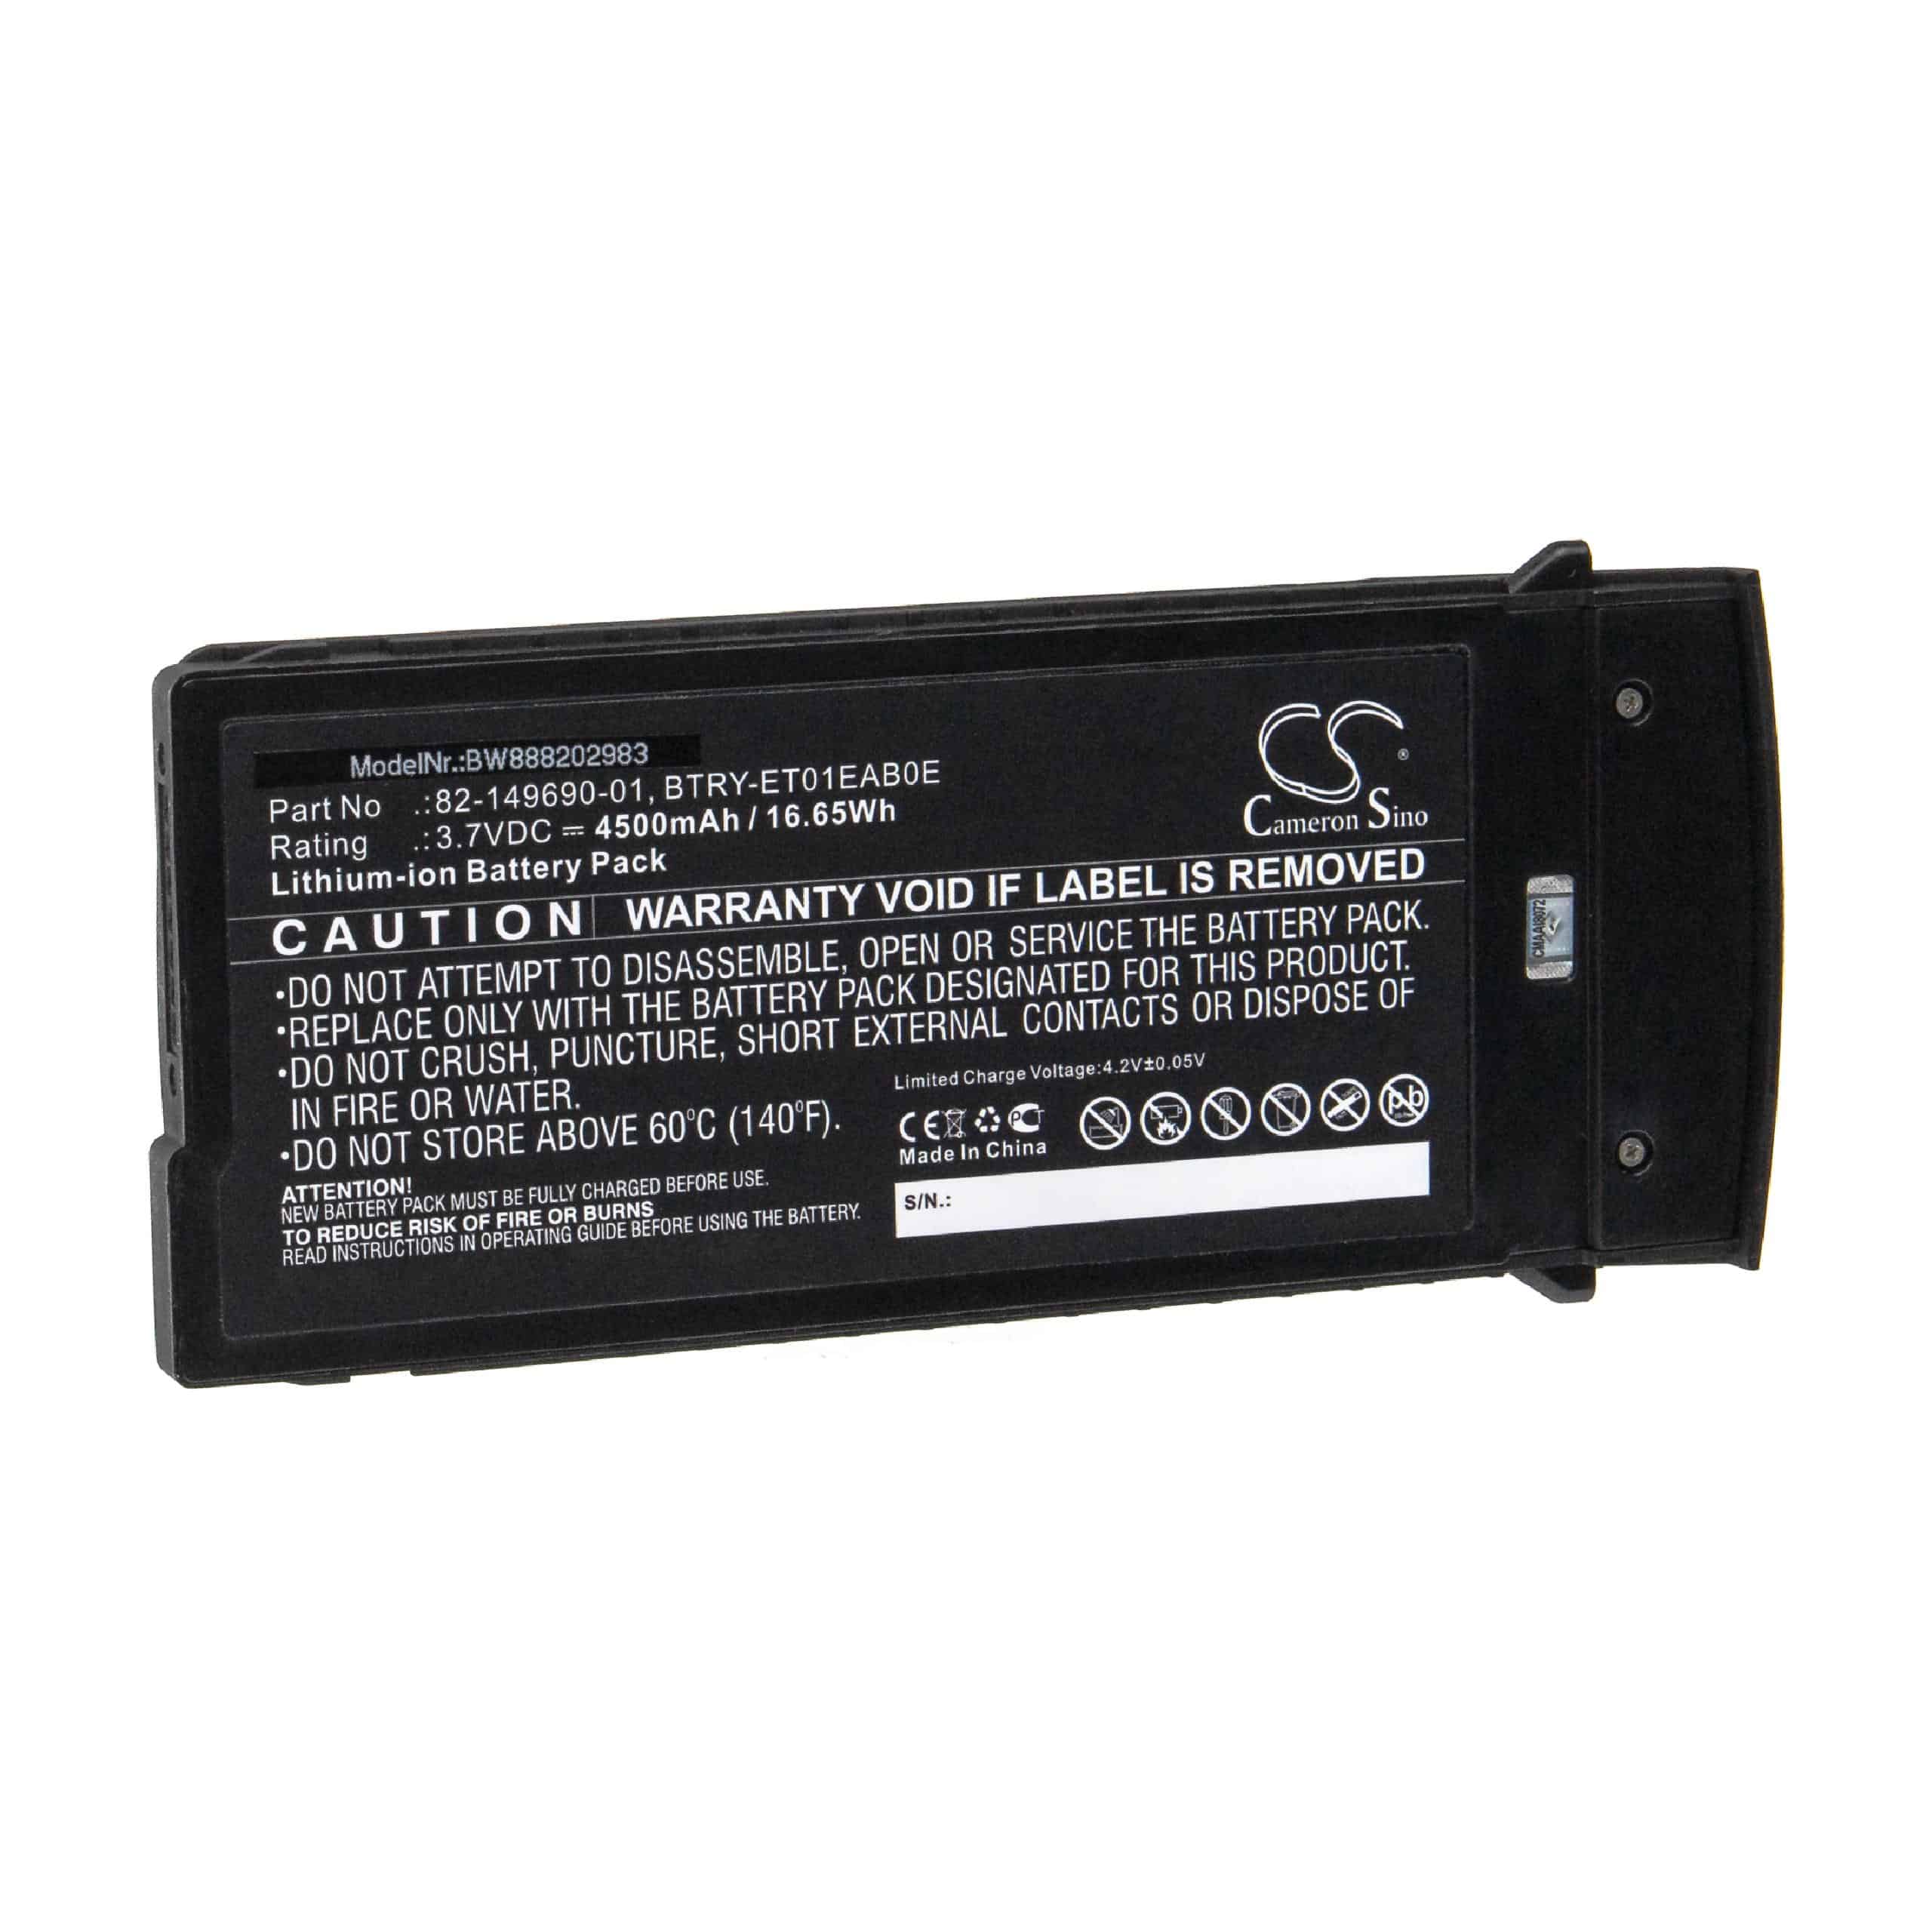 Batterie remplace Motorola BTRY-ET01EAB0E, 82-149690-01 pour tablette - 4500mAh 3,7V Li-ion